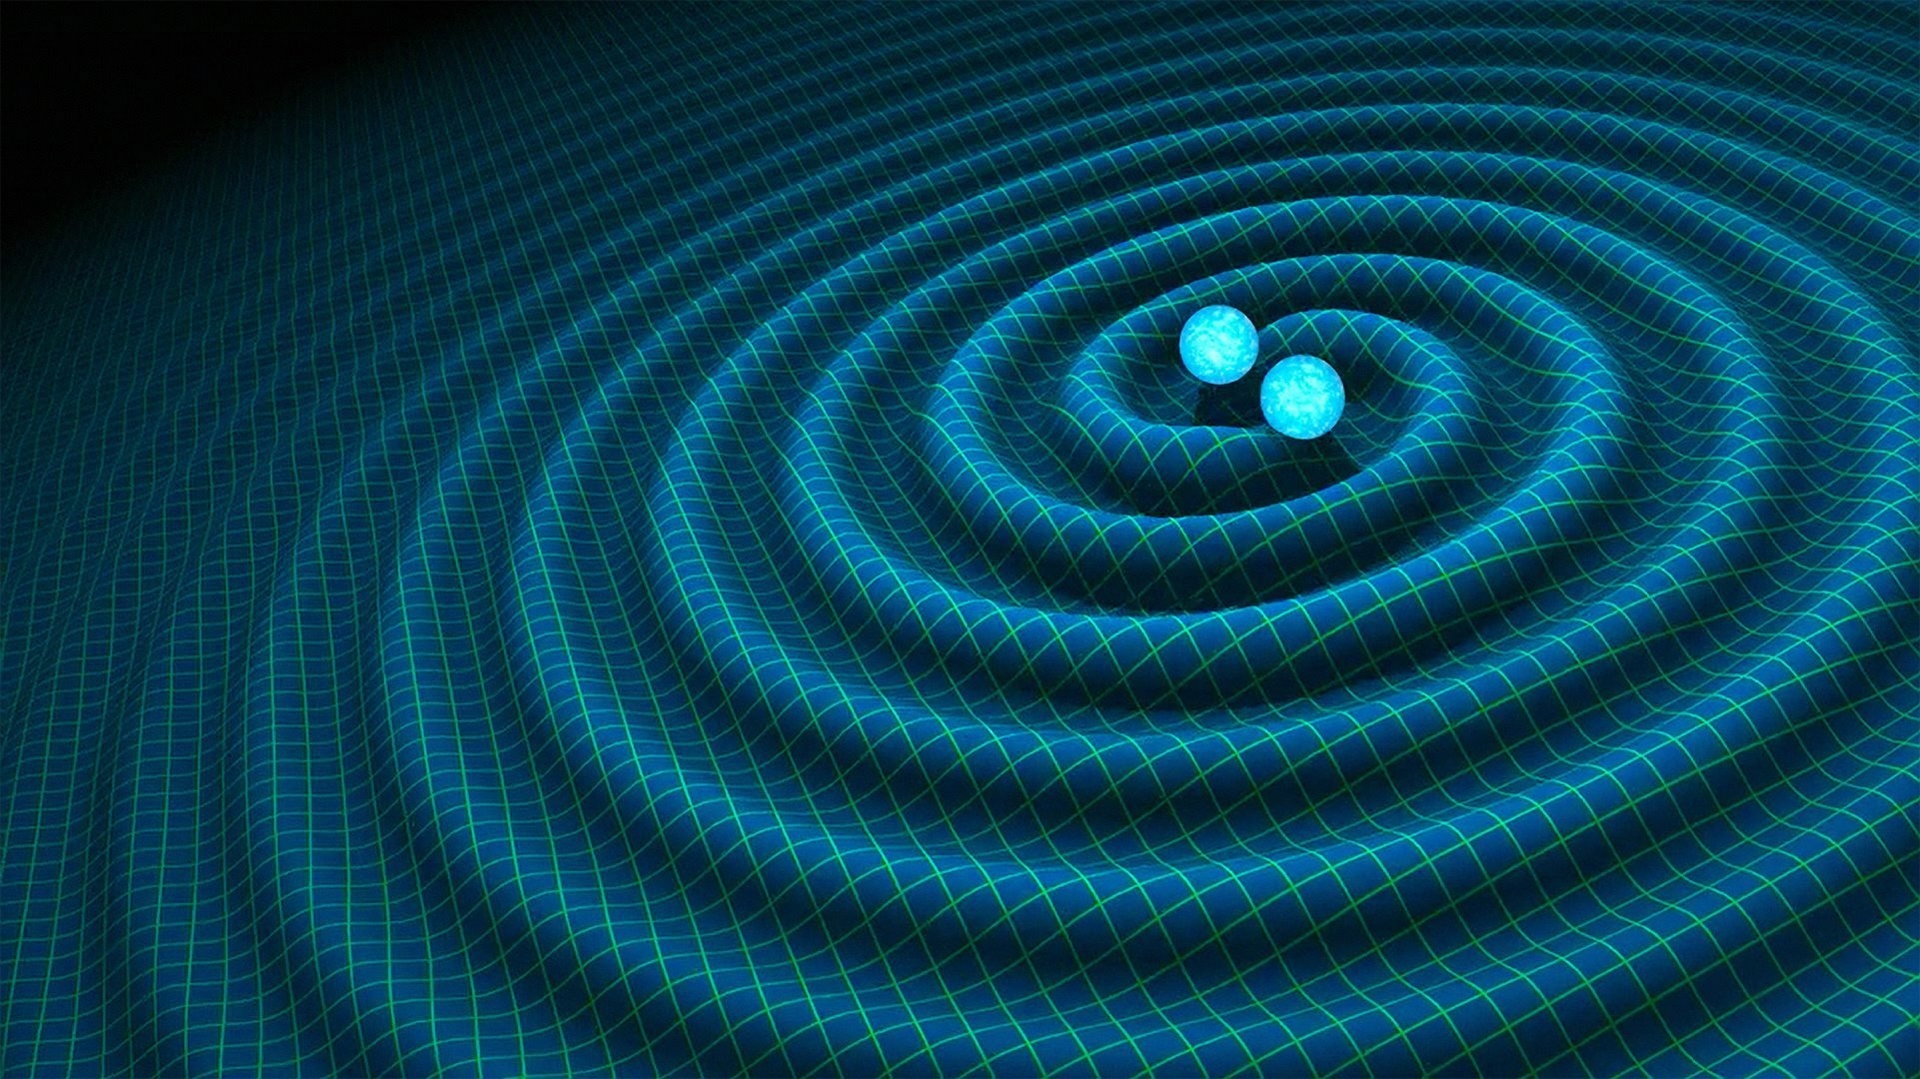 重力波示意圖。當物體加速度前進時 (如兩個超大質量星體互繞)，會使空間的扭曲發生變化、產生「漣漪」，這就是「重力波」。圖片來源│R. Hurt/Caltech-JPL